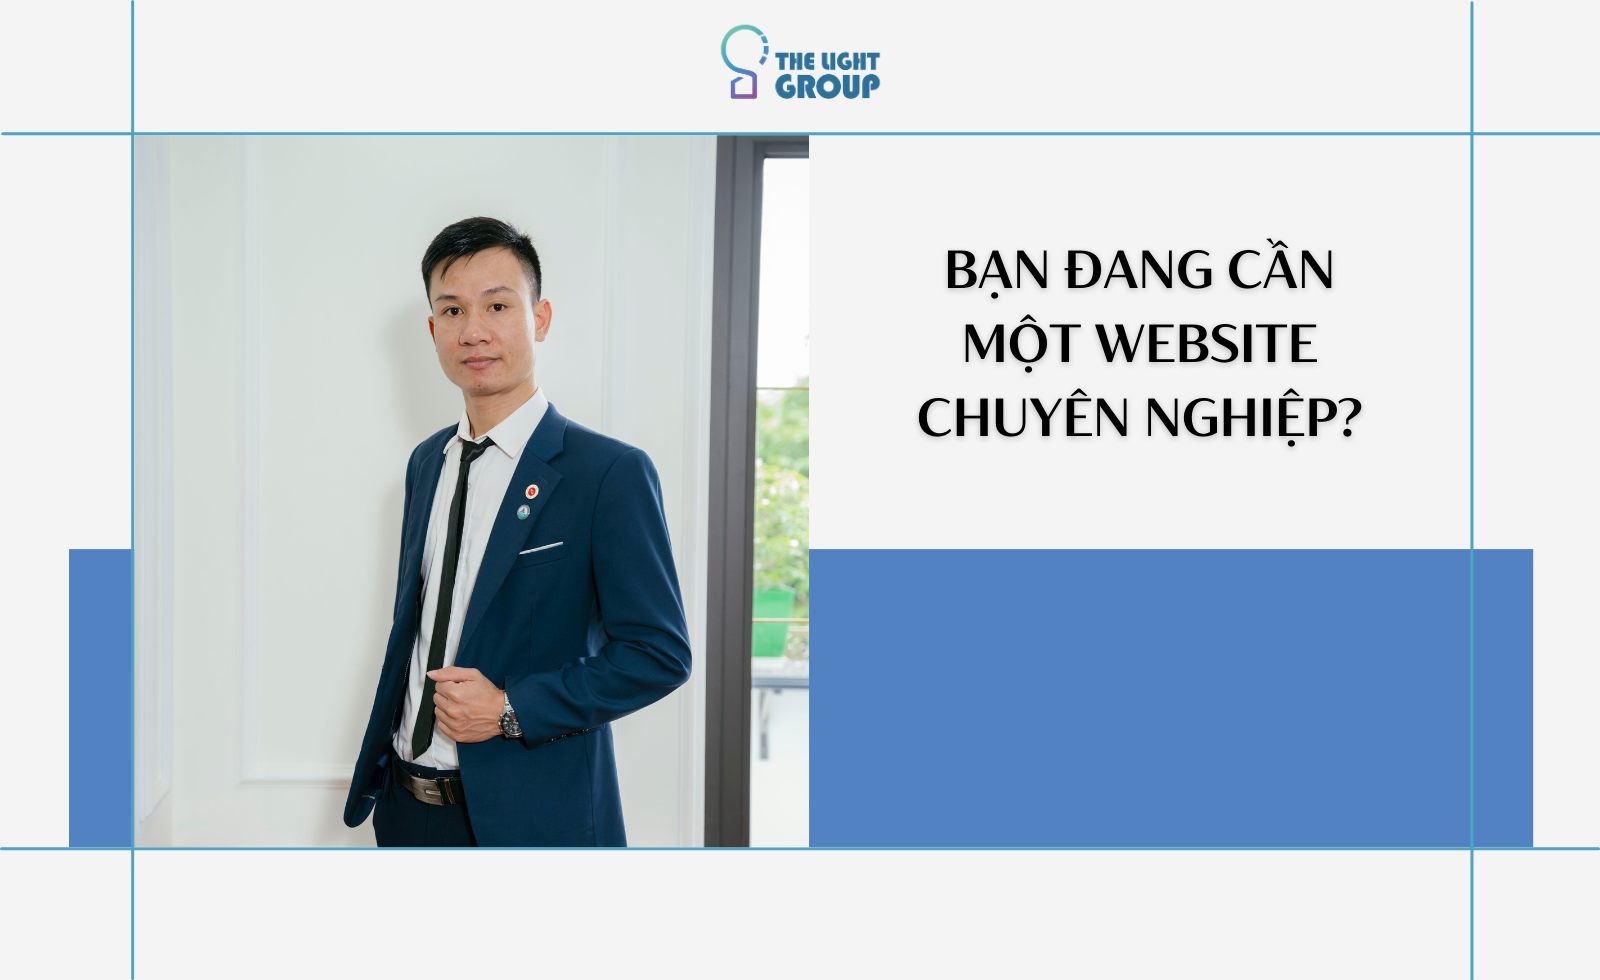 ban-dang-can-mot-website-chuyen-nghiep-1693988871.png